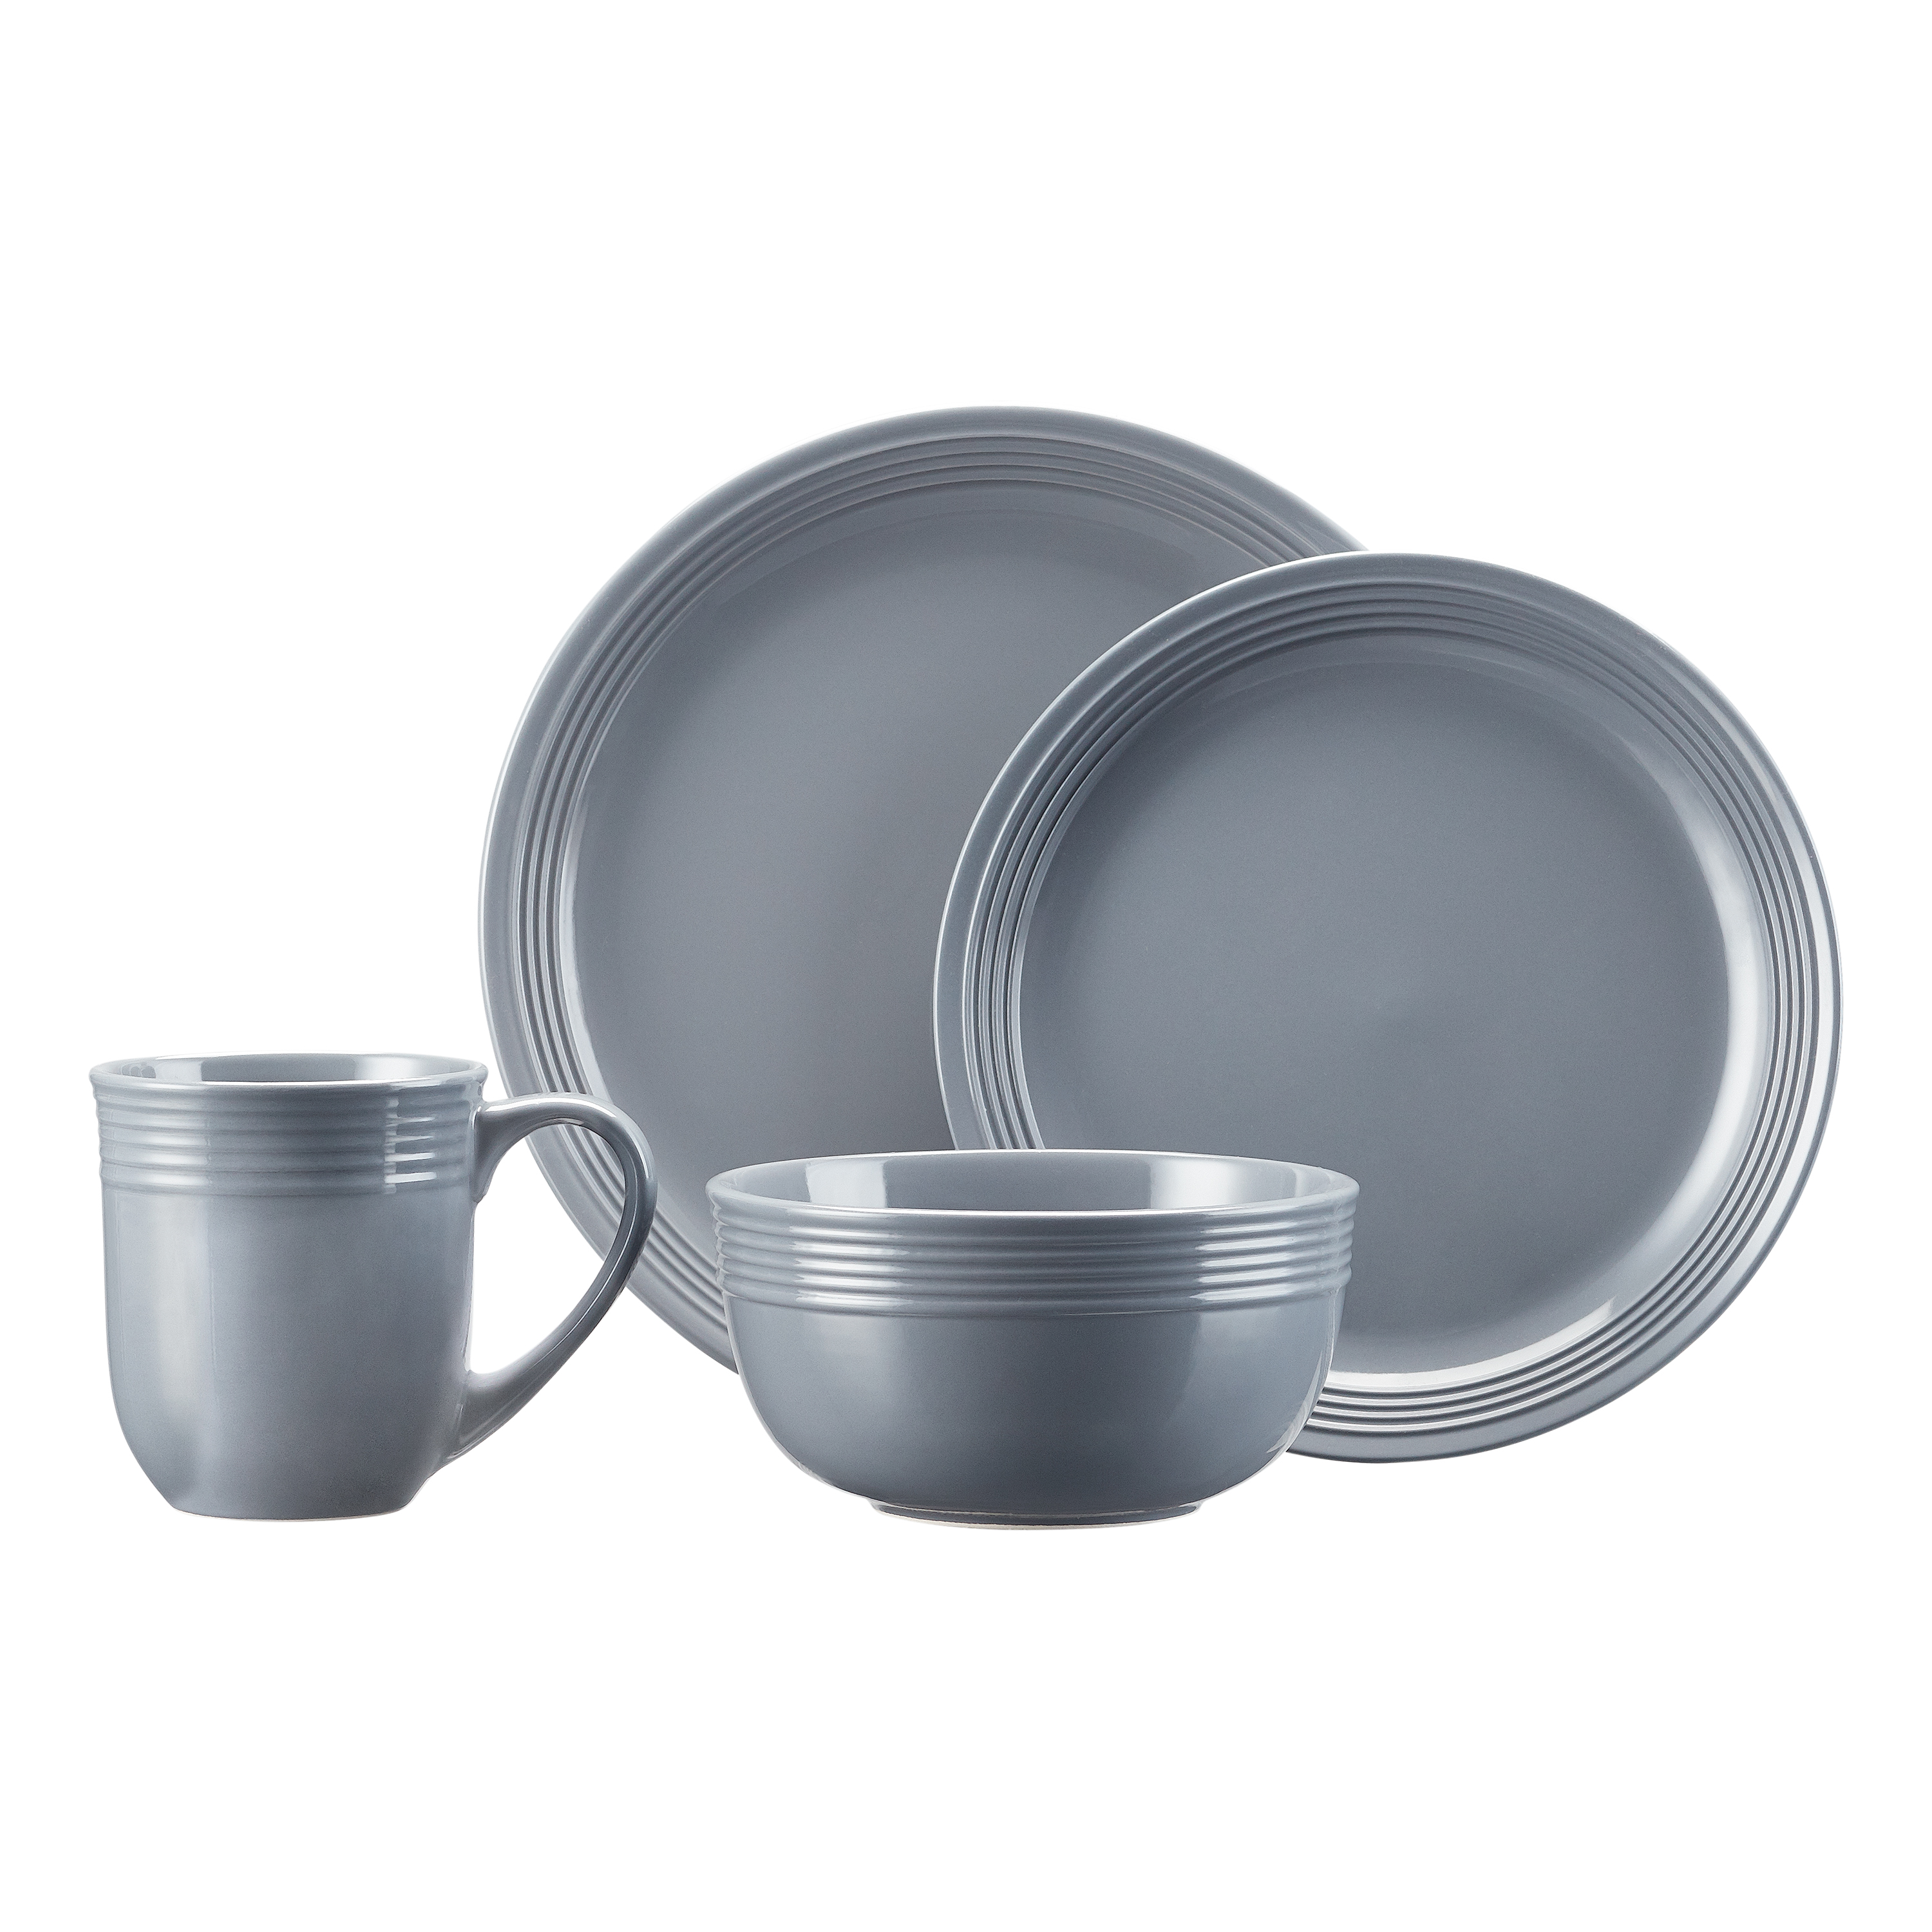 Mainstays Chiara 16-Piece Stoneware Gray Dinnerware Set - image 1 of 9